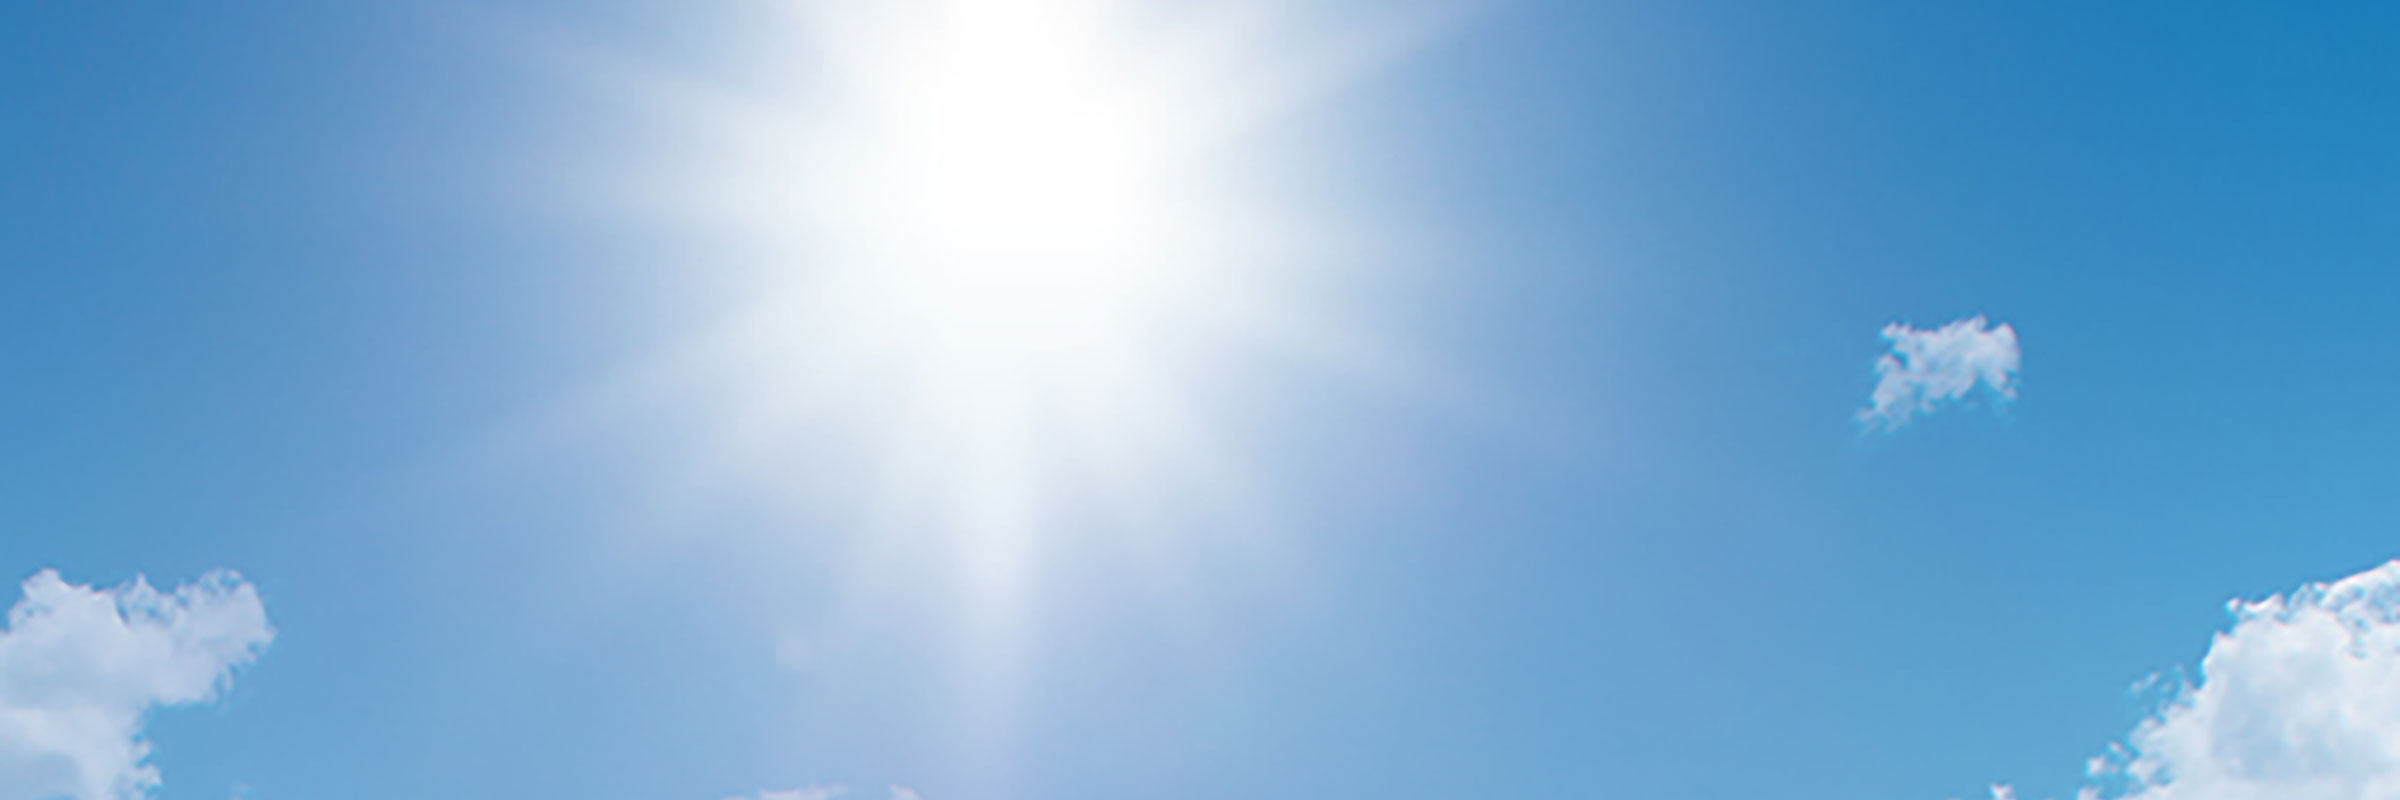 太陽光スペクトルの季節的変化 時間的変化の測定 Eko 英弘精機株式会社 気象 環境 物性 分析 計測機器 製造 販売